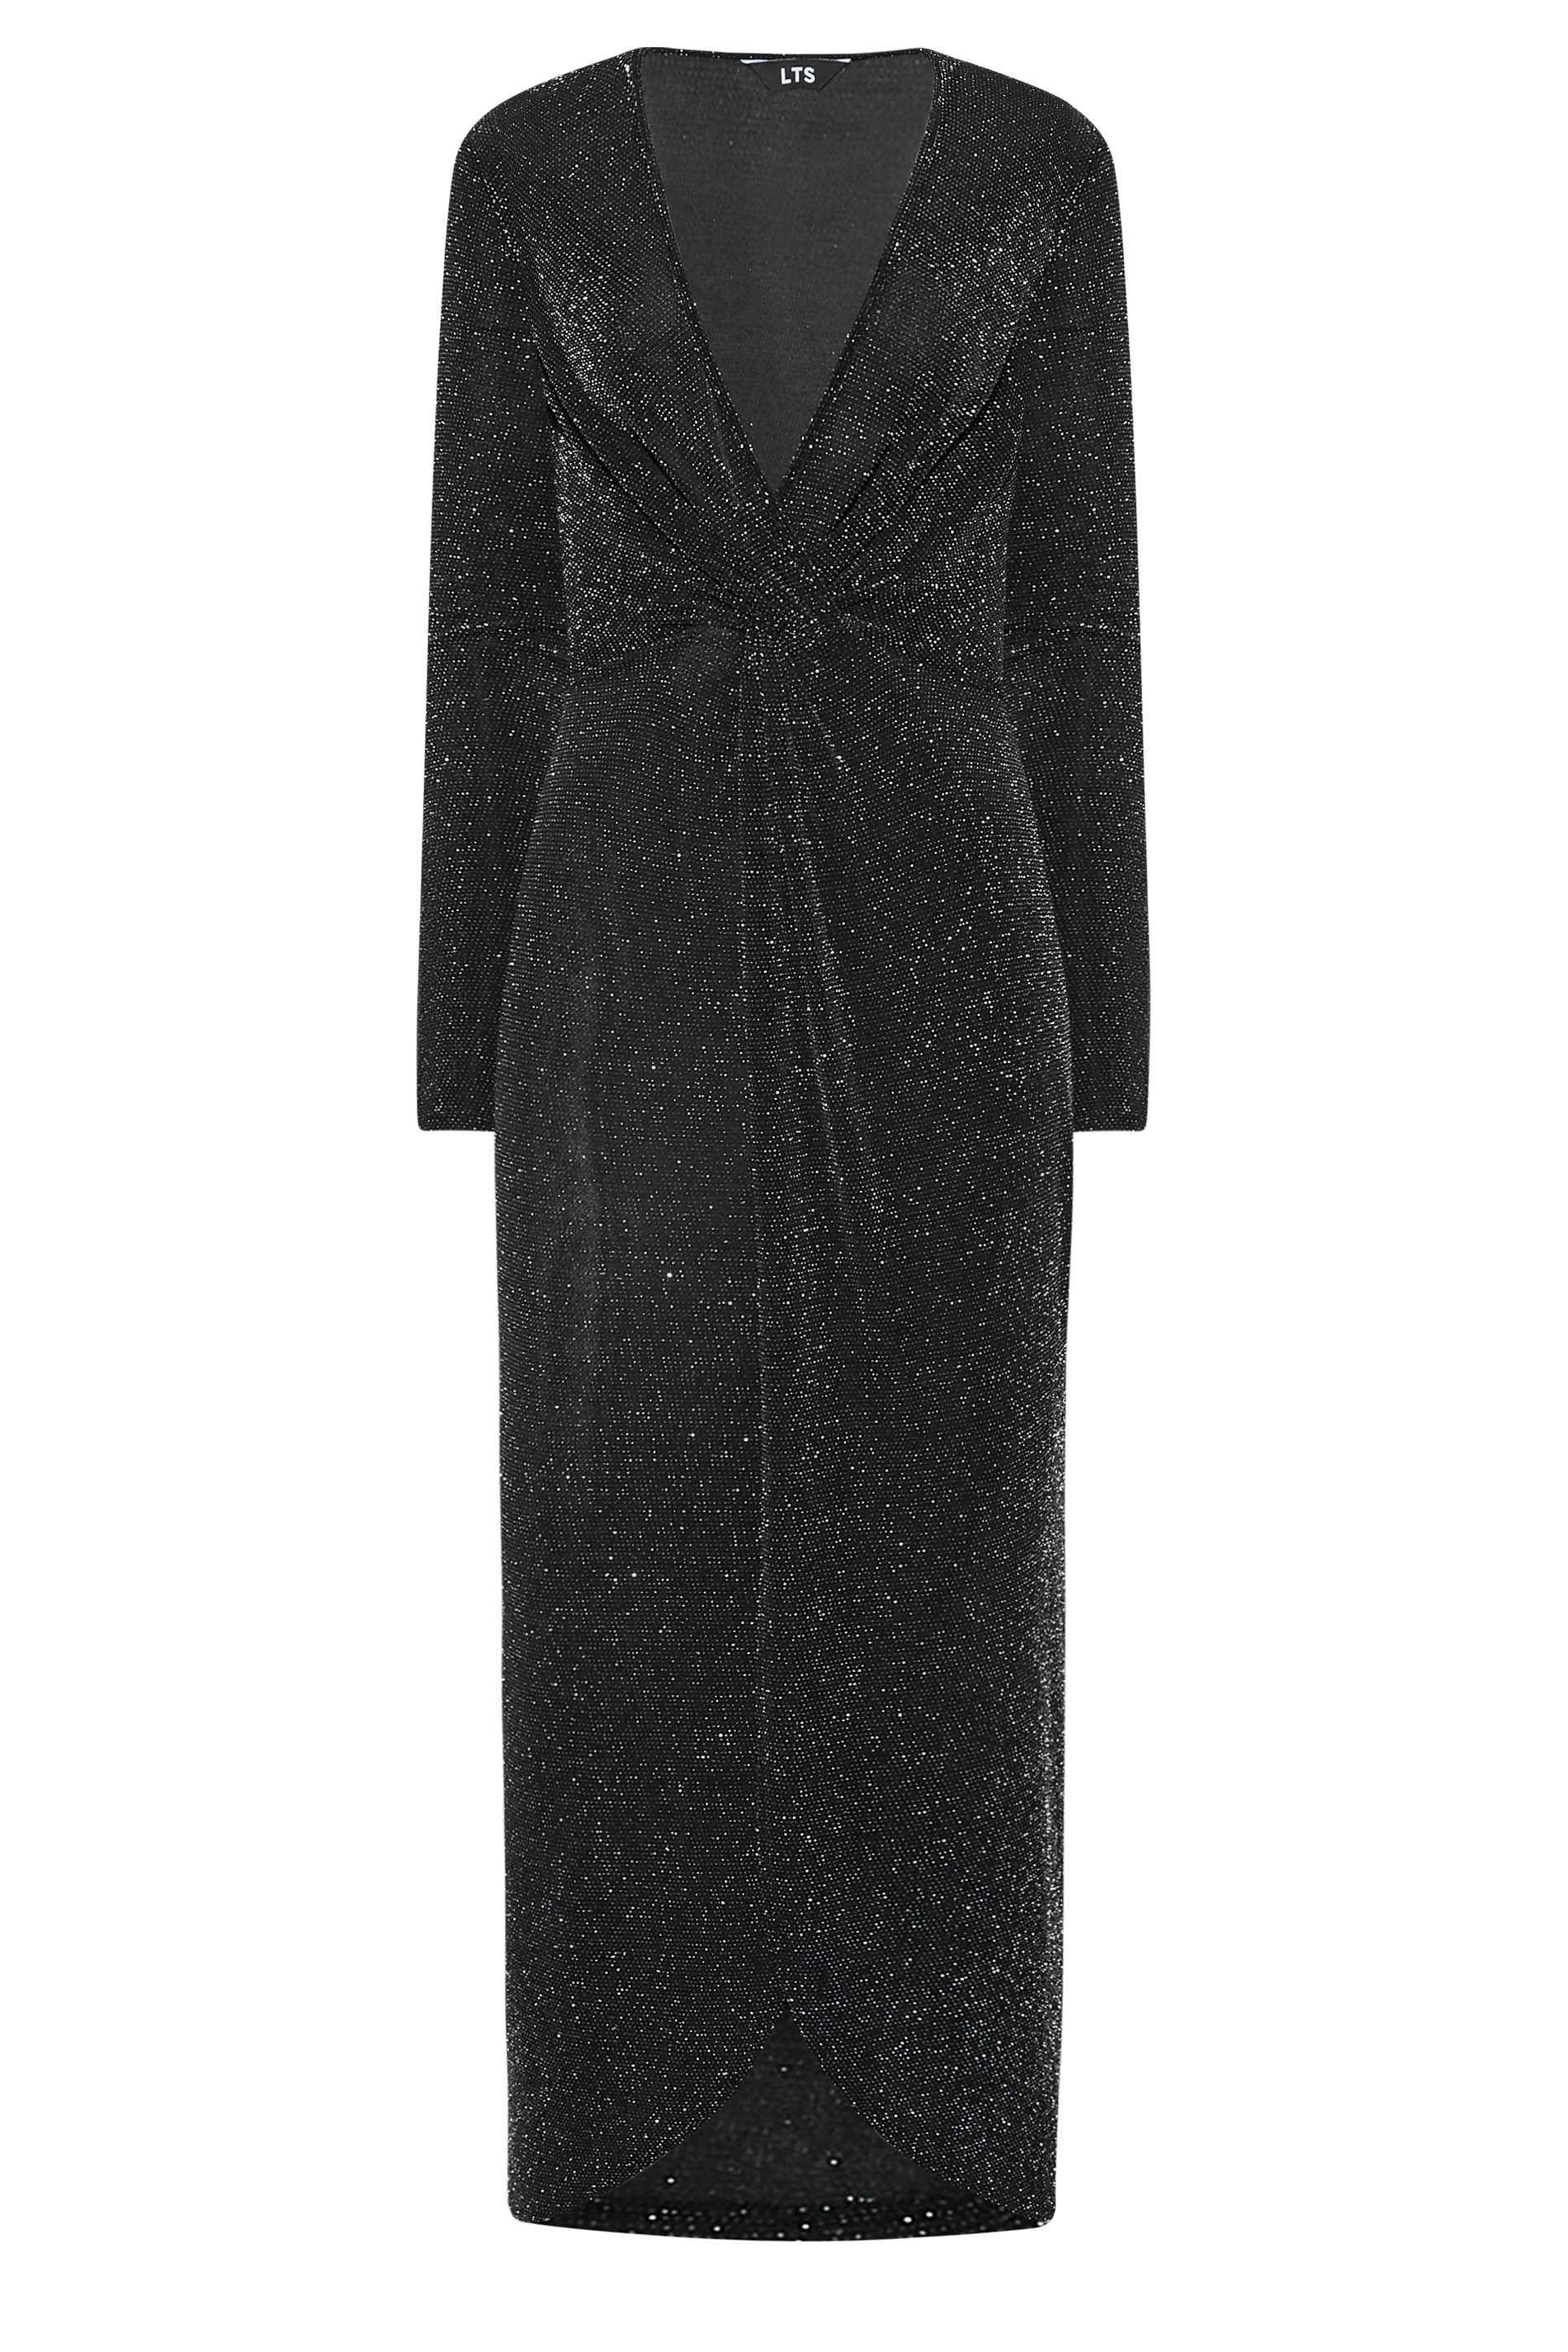 LTS Tall Women's Black & Silver Glitter Wrap Midi Dress | Long Tall Sally 2